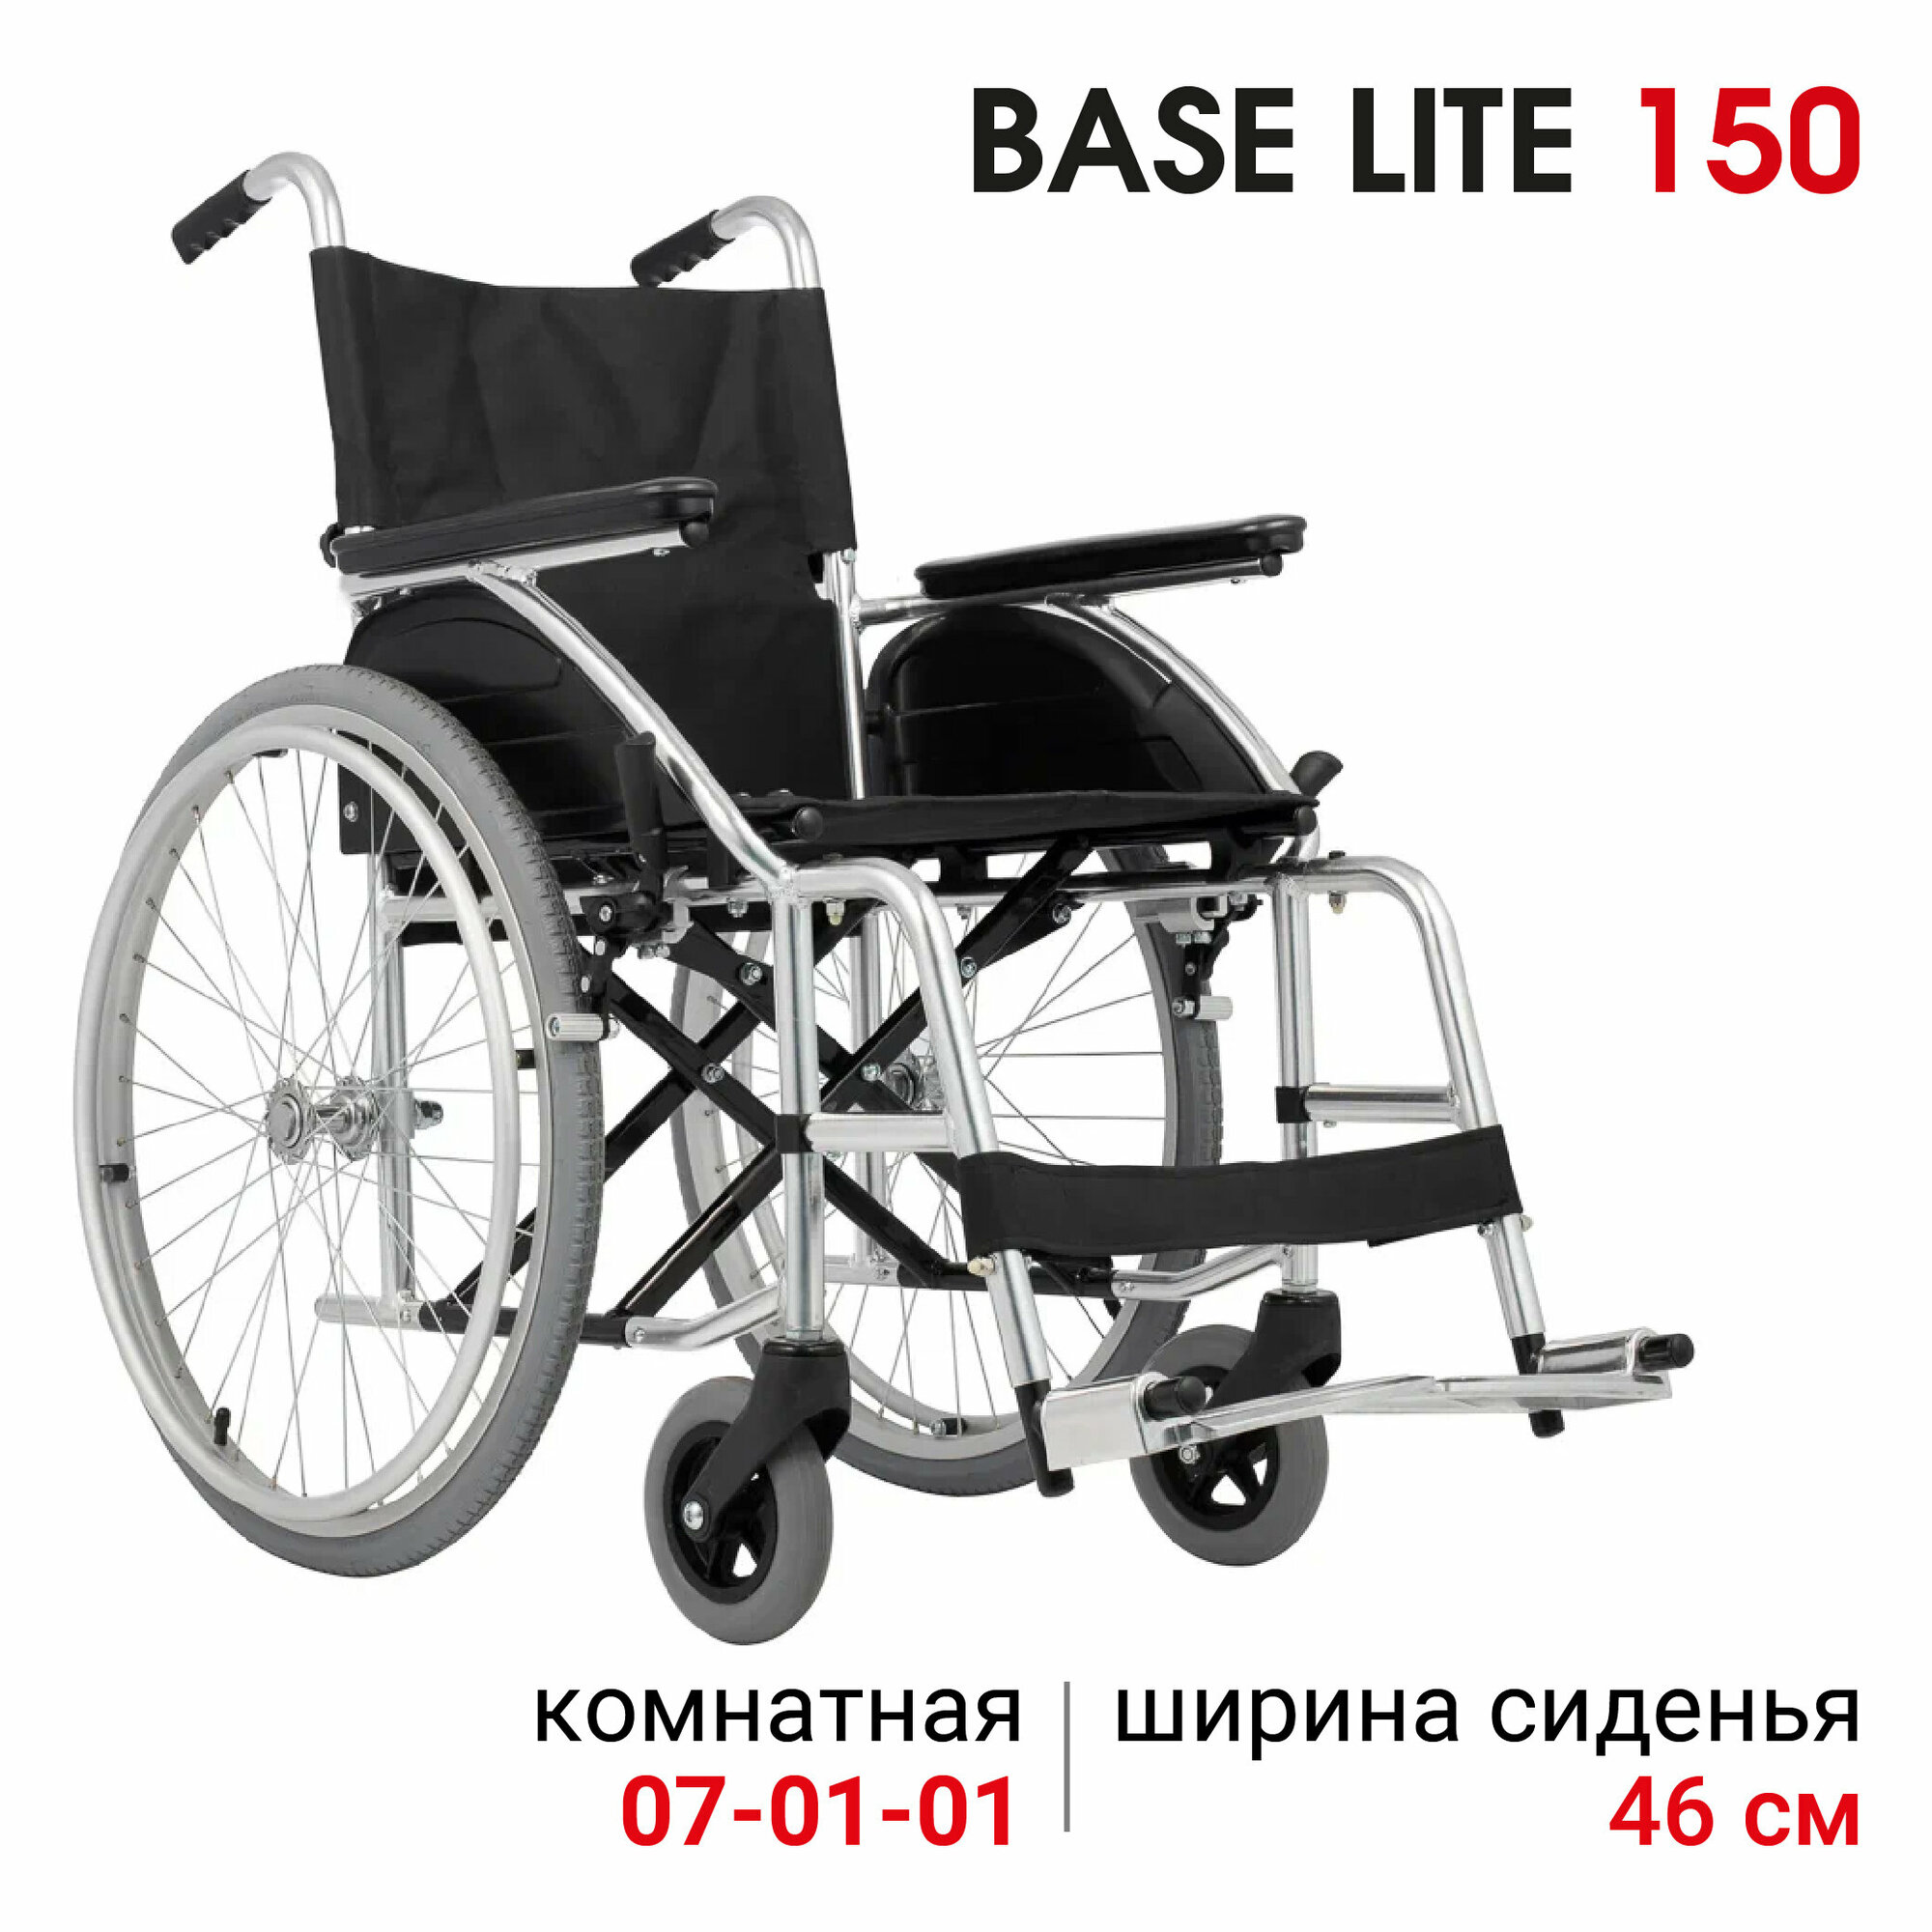 Кресло-коляска комнатная Ortonica Base 160/Base Lite 150 46UU медицинская инвалидная складная облегченная, ширина сиденья 46 см литые колеса Код ФСС 7-01-01